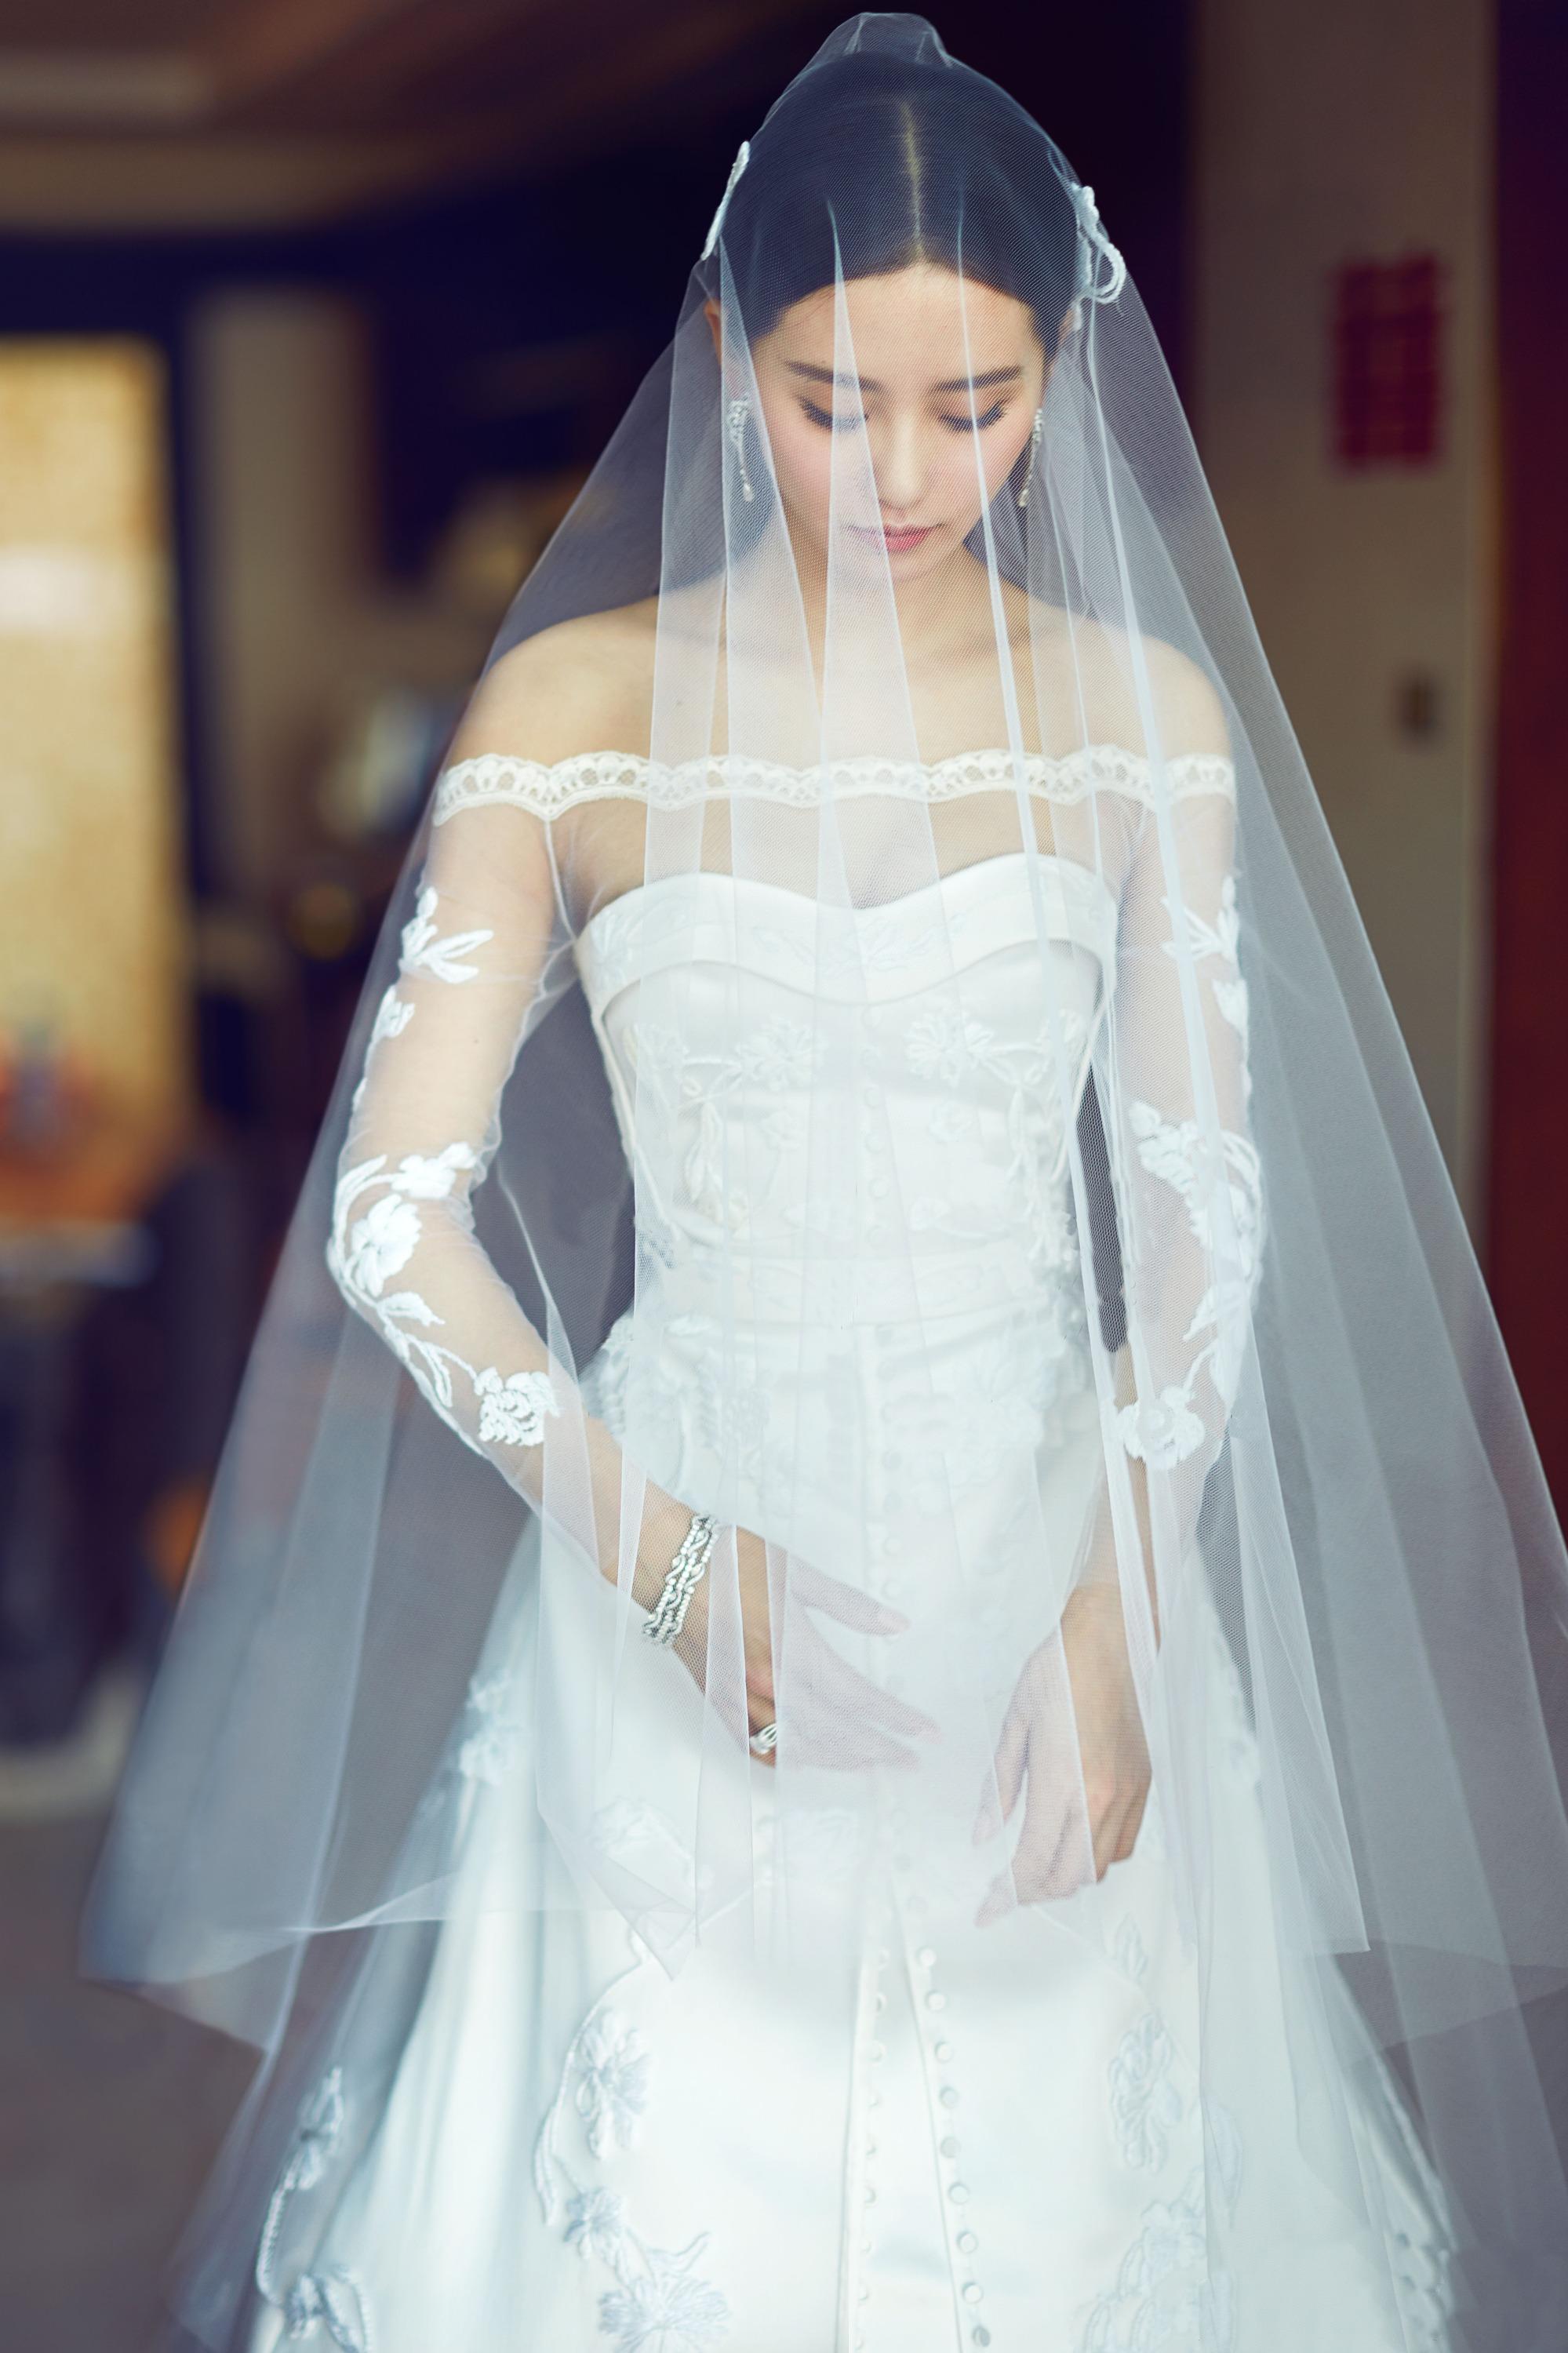 头纱与婚纱的搭配是让你成为最美新娘的重要因素